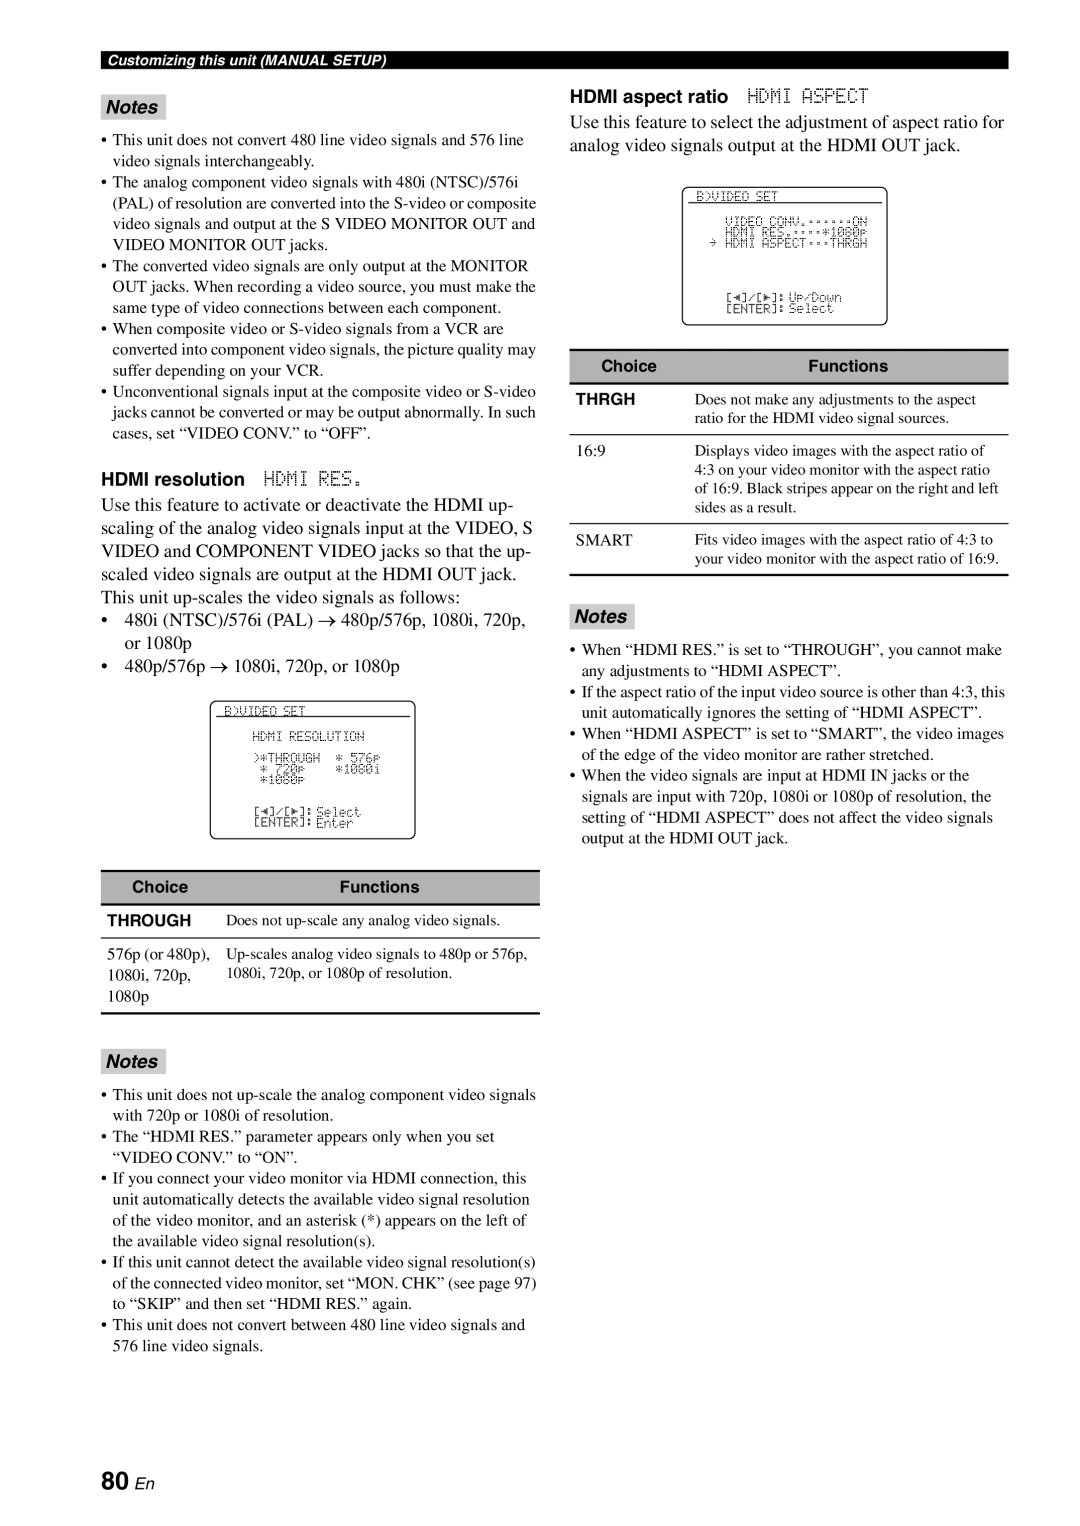 Yamaha DSP-AX863SE owner manual 80 En, HDMI resolution HDMI RES, HDMI aspect ratio HDMI ASPECT, Notes 